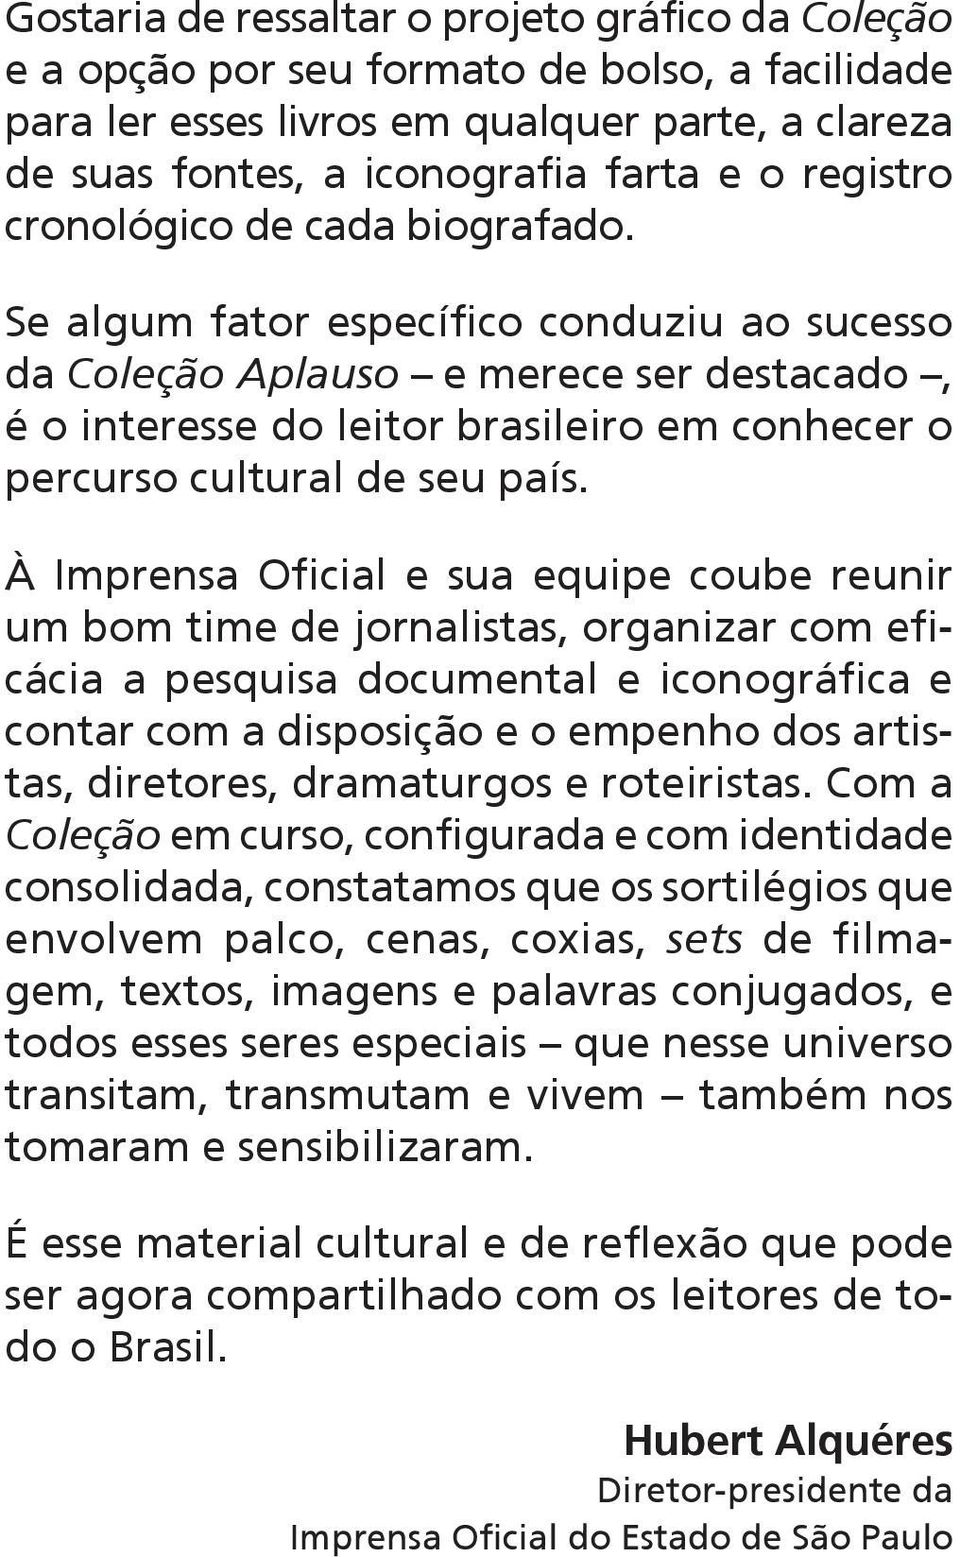 Se algum fator específico conduziu ao sucesso da Coleção Aplauso e merece ser destacado, é o interesse do leitor brasileiro em conhecer o percurso cultural de seu país.